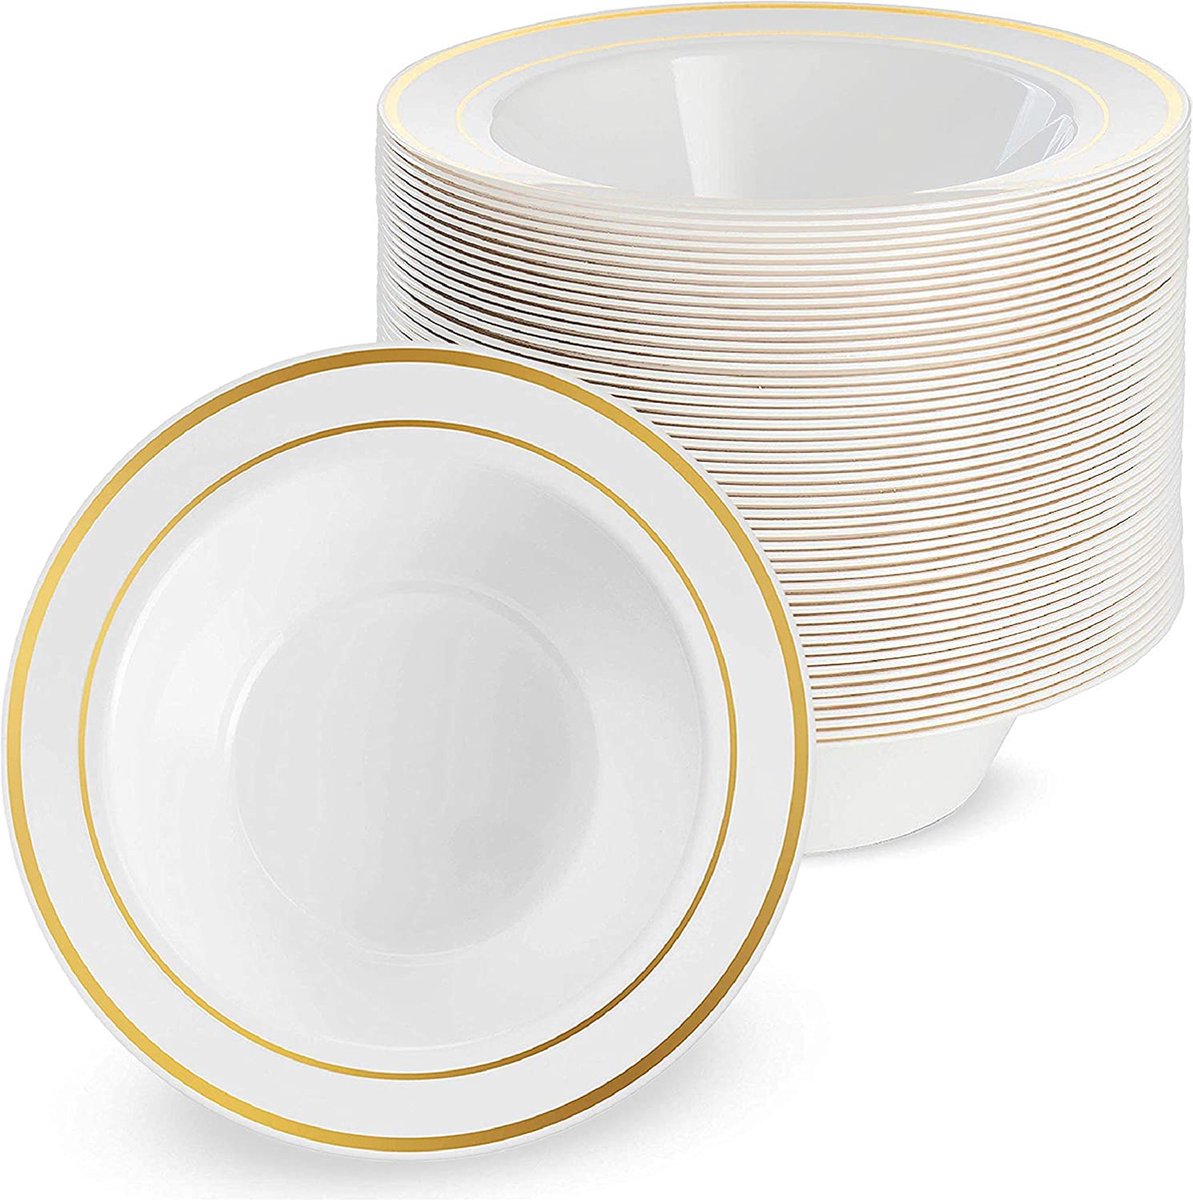 25 Witte Plastic Kommen met Gouden Rand (360 ml) voor Bruiloften, Verjaardagen, Doopfeesten, Kerstmis en Feesten - Stevig en Herbruikbaar